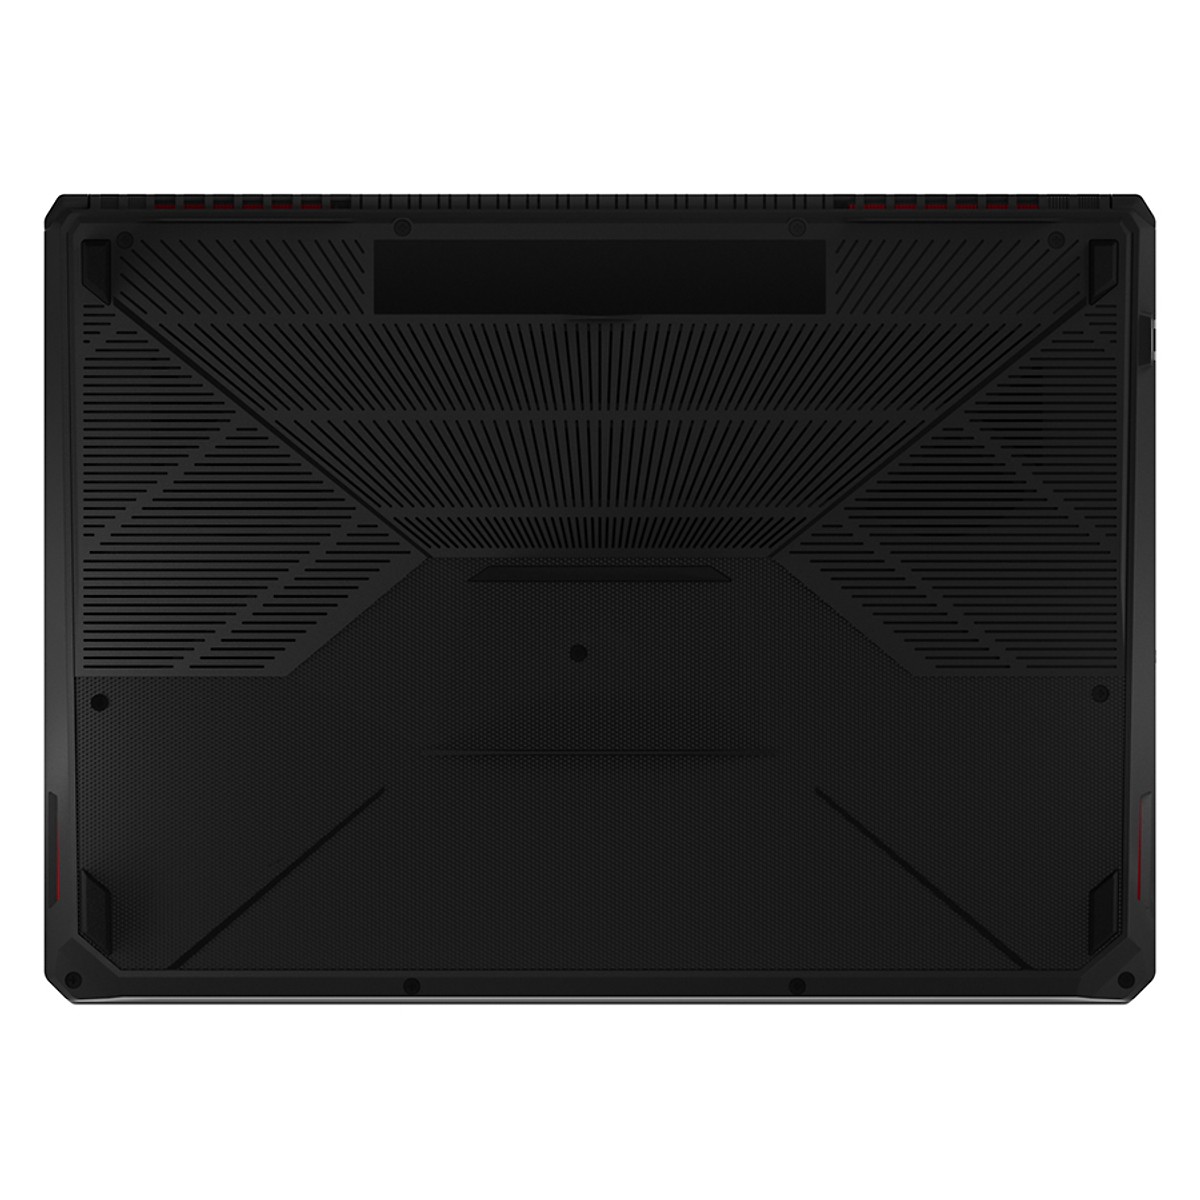 Laptop Gaming Asus TUF FX505GE-BQ308T Core i7-8750H/ GTX1050Ti 4G/ Win10 (15.6″ FHD) - Hàng Chính Hãng